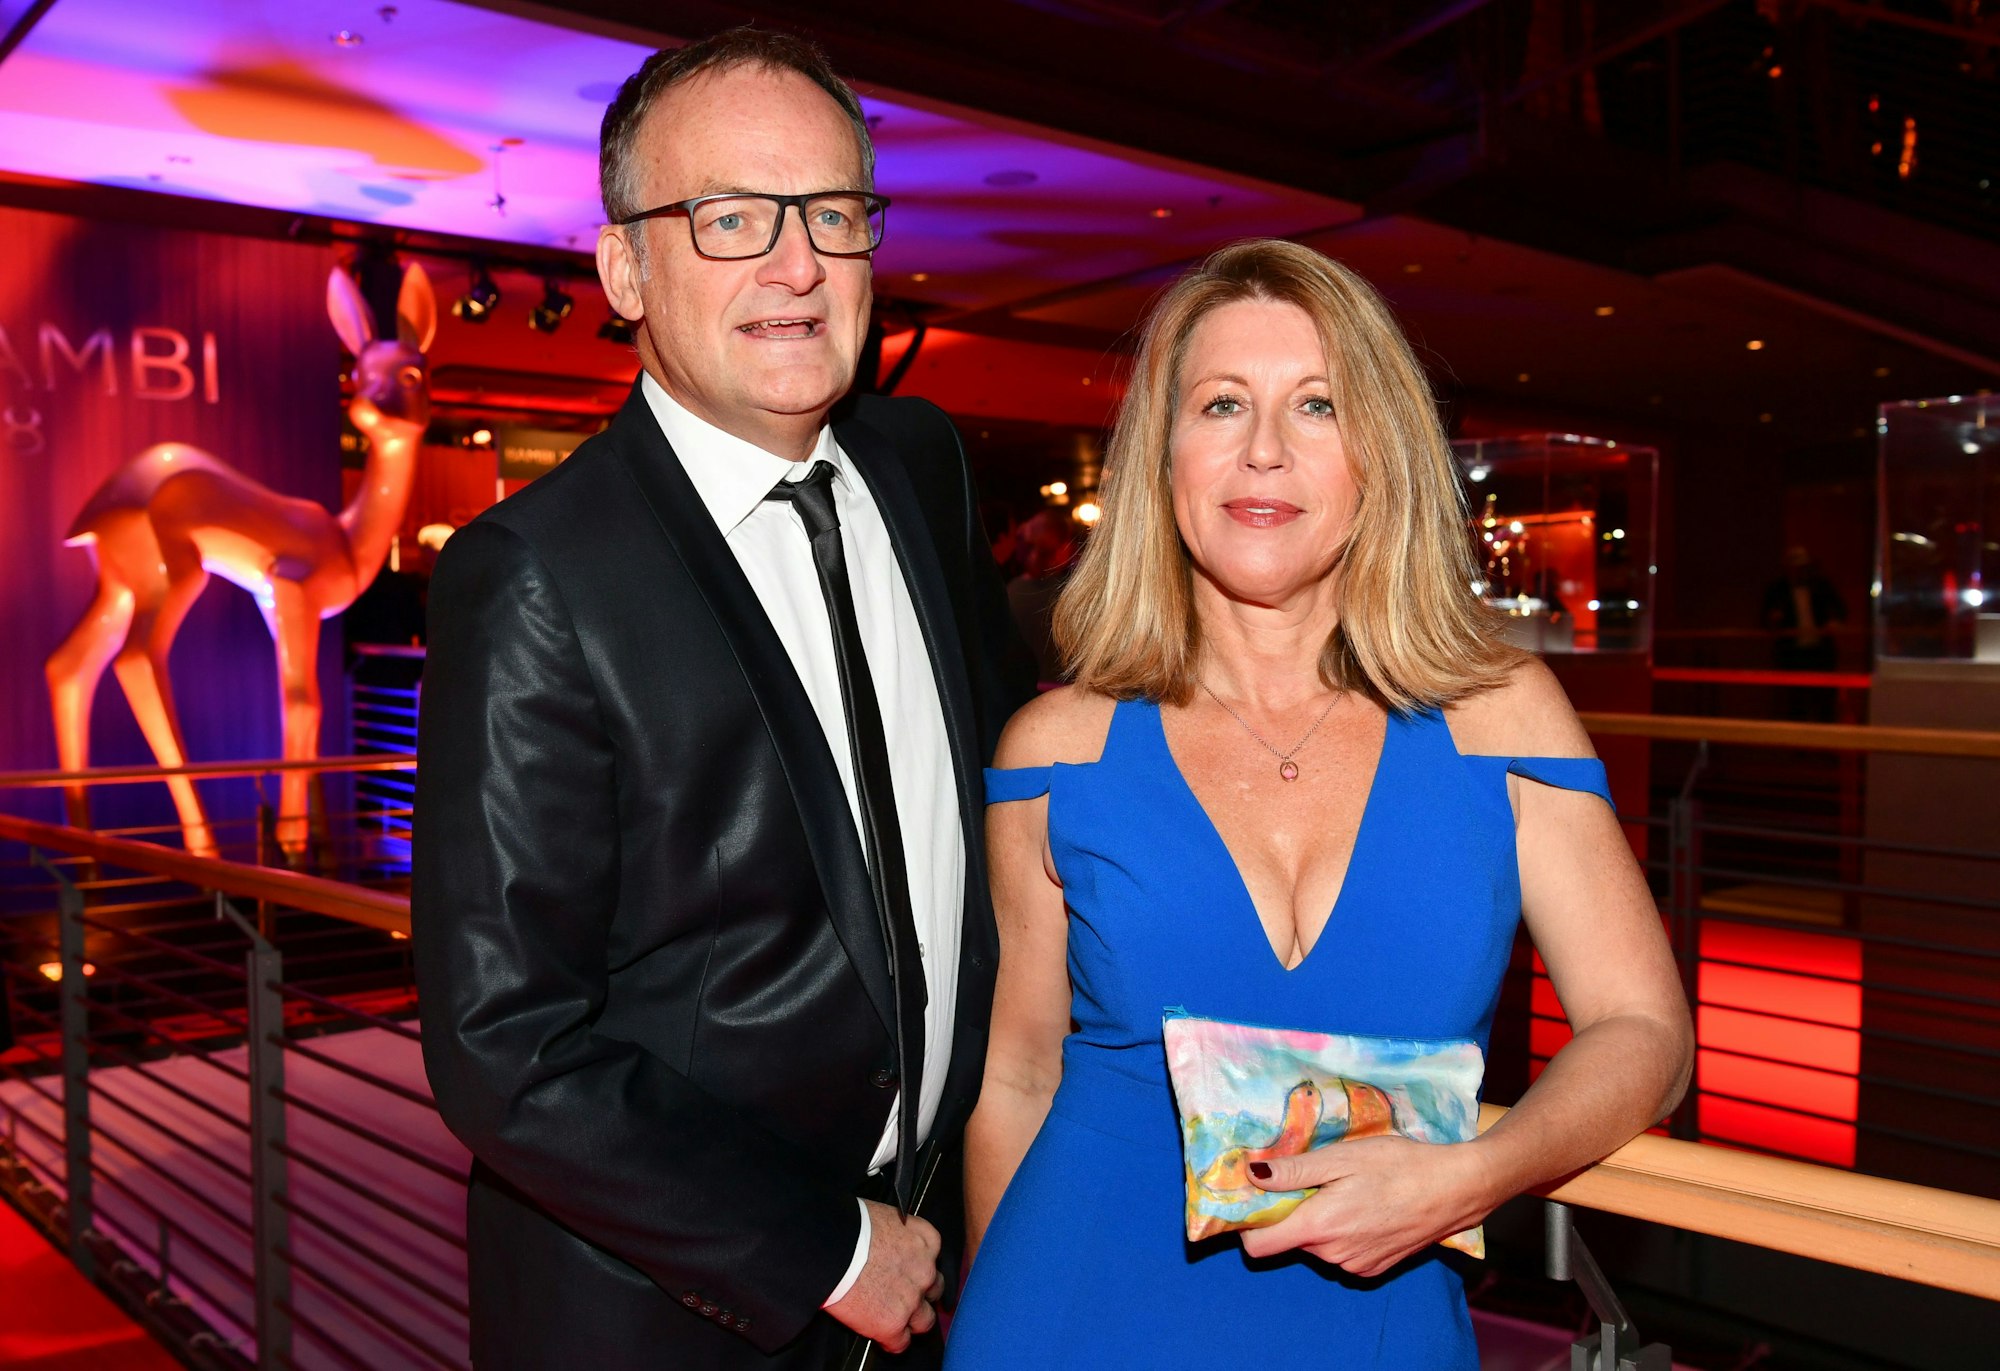 Anne Gesthuysen und Frank Plasberg beim Vorempfang zur 70. Verleihung des Medienpreises Bambi im Stage Theater